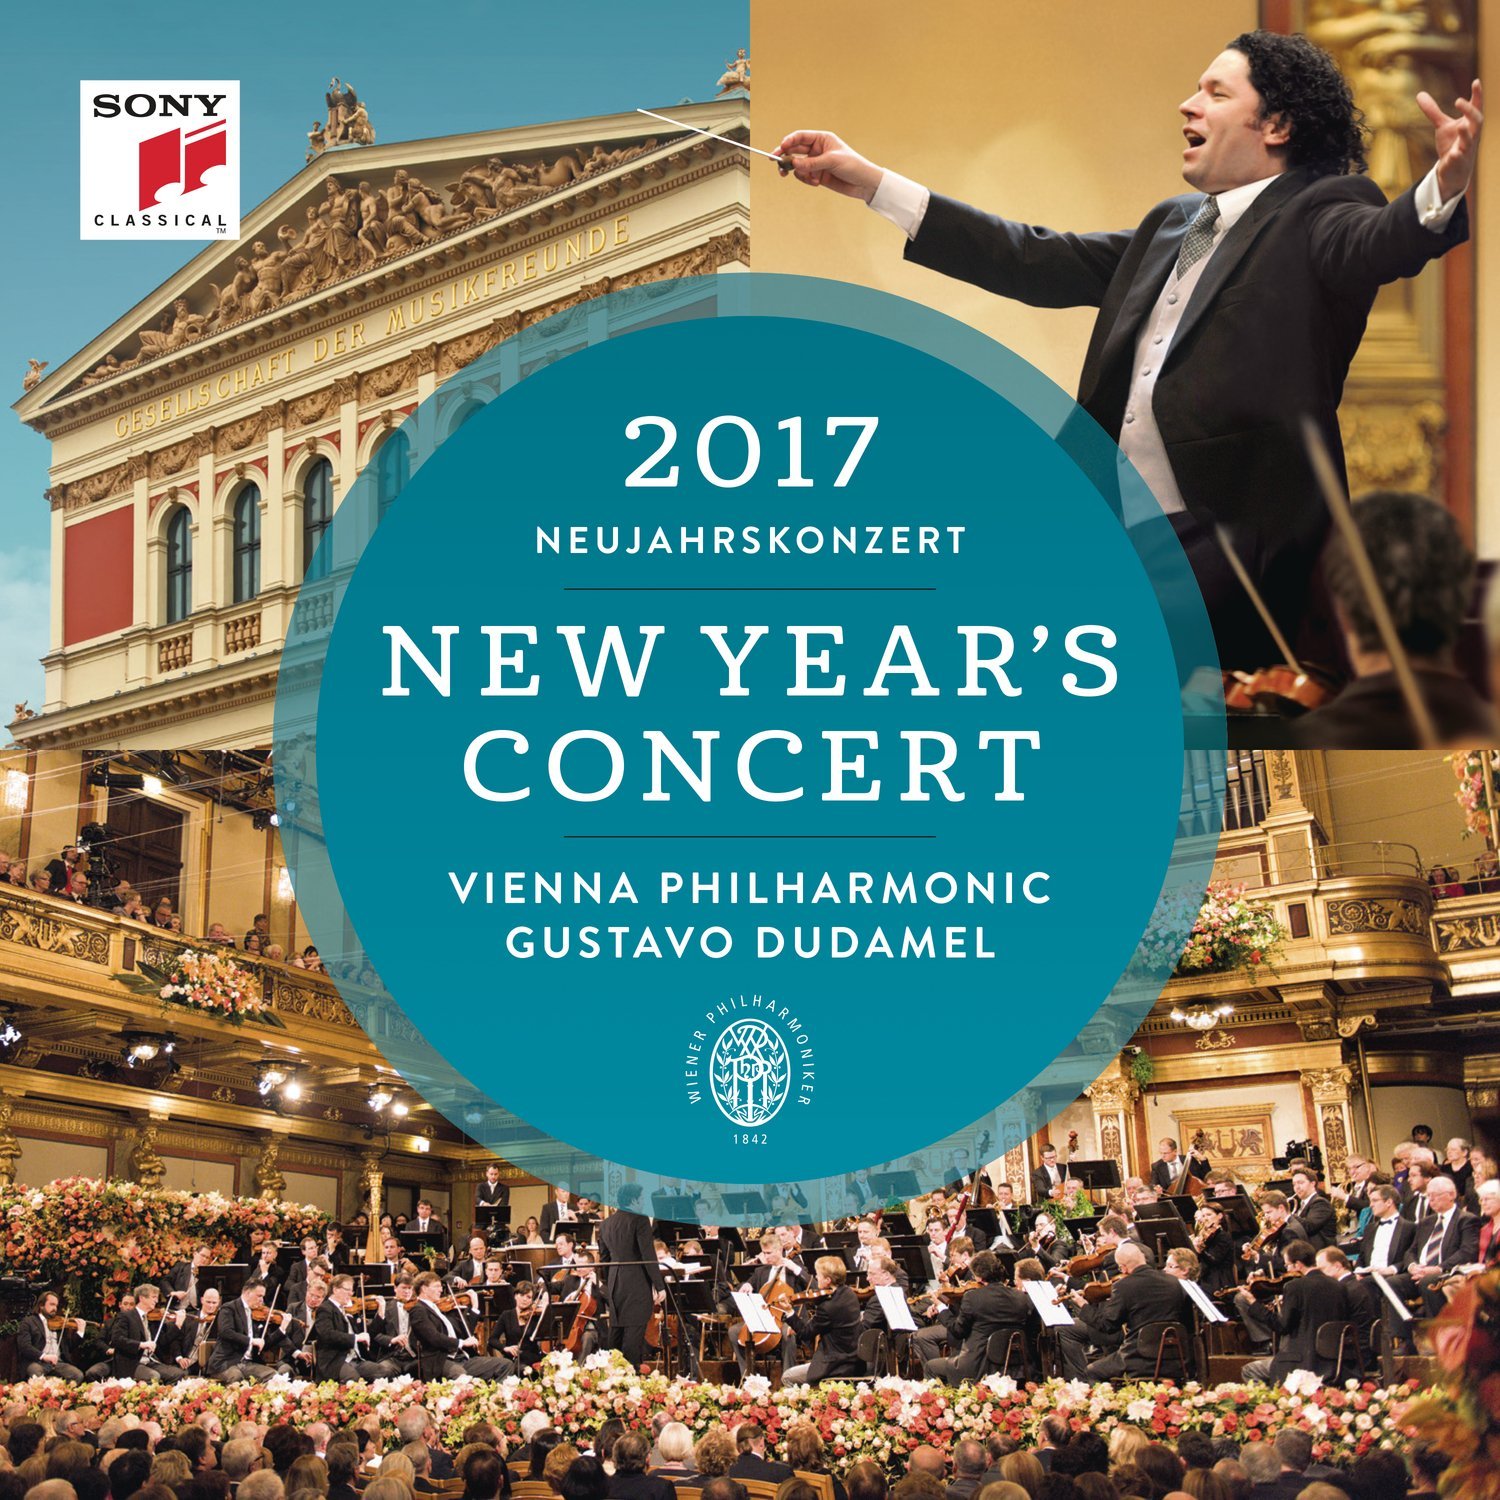 Vienna Philharmonic Orchestra & Gustavo Dudamel - New Year’s Concert 2017 / Neujahrskonzert 2017 (2017) [FLAC 24bit/96kHz]